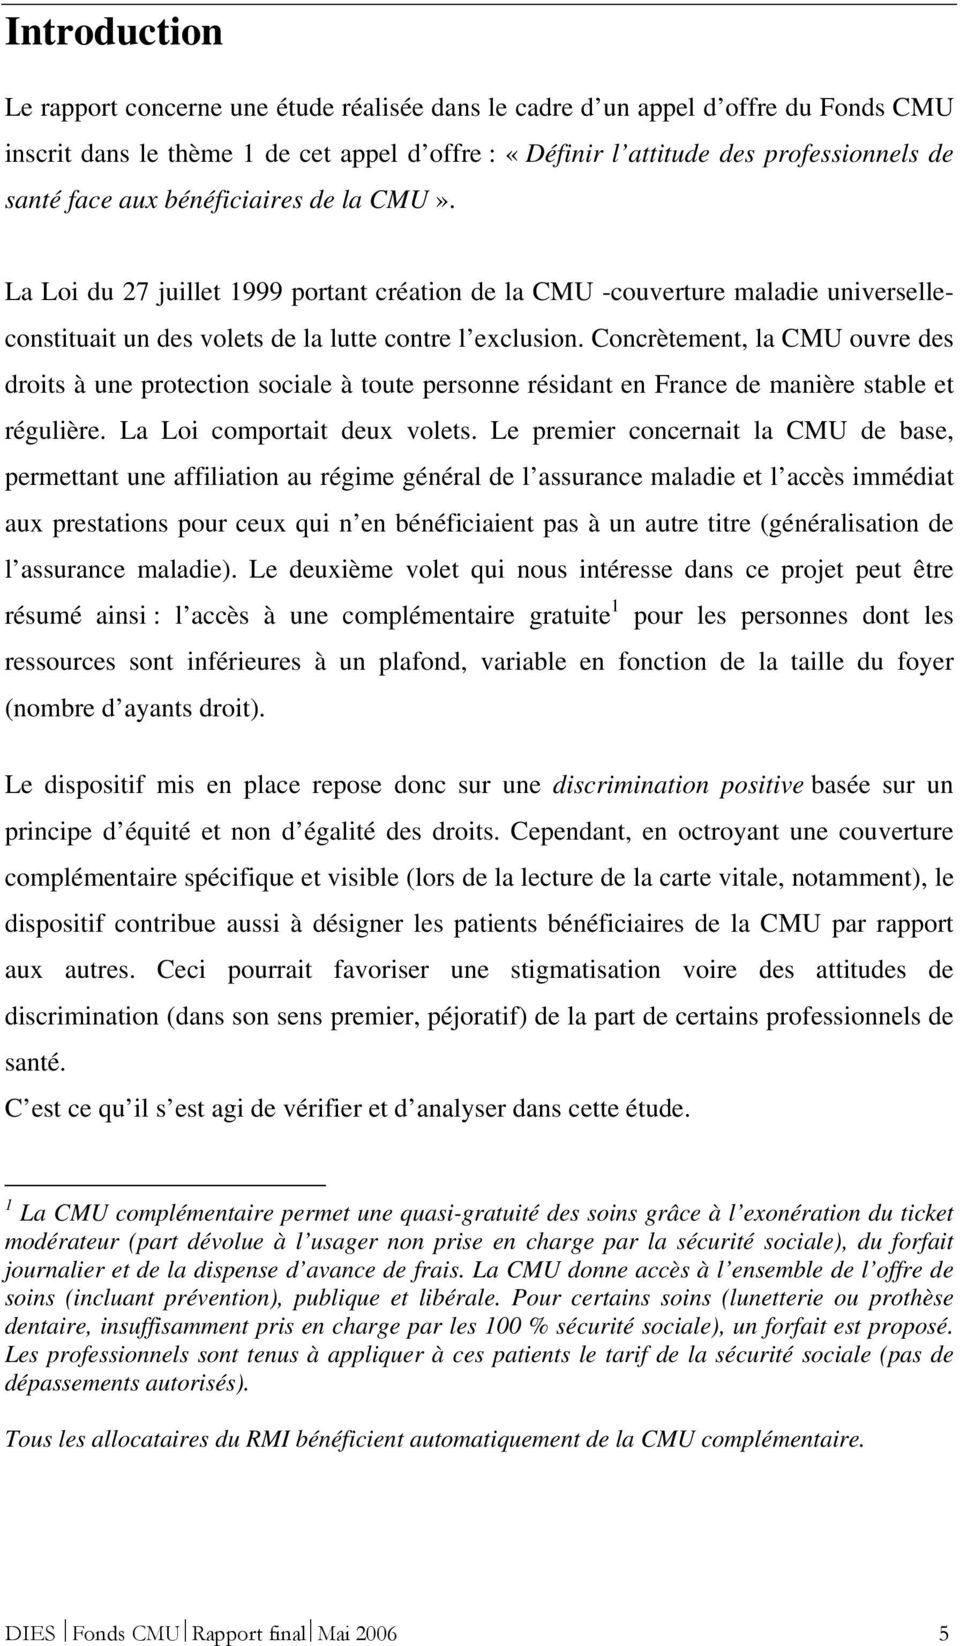 Concrètement, la CMU ouvre des droits à une protection sociale à toute personne résidant en France de manière stable et régulière. La Loi comportait deux volets.